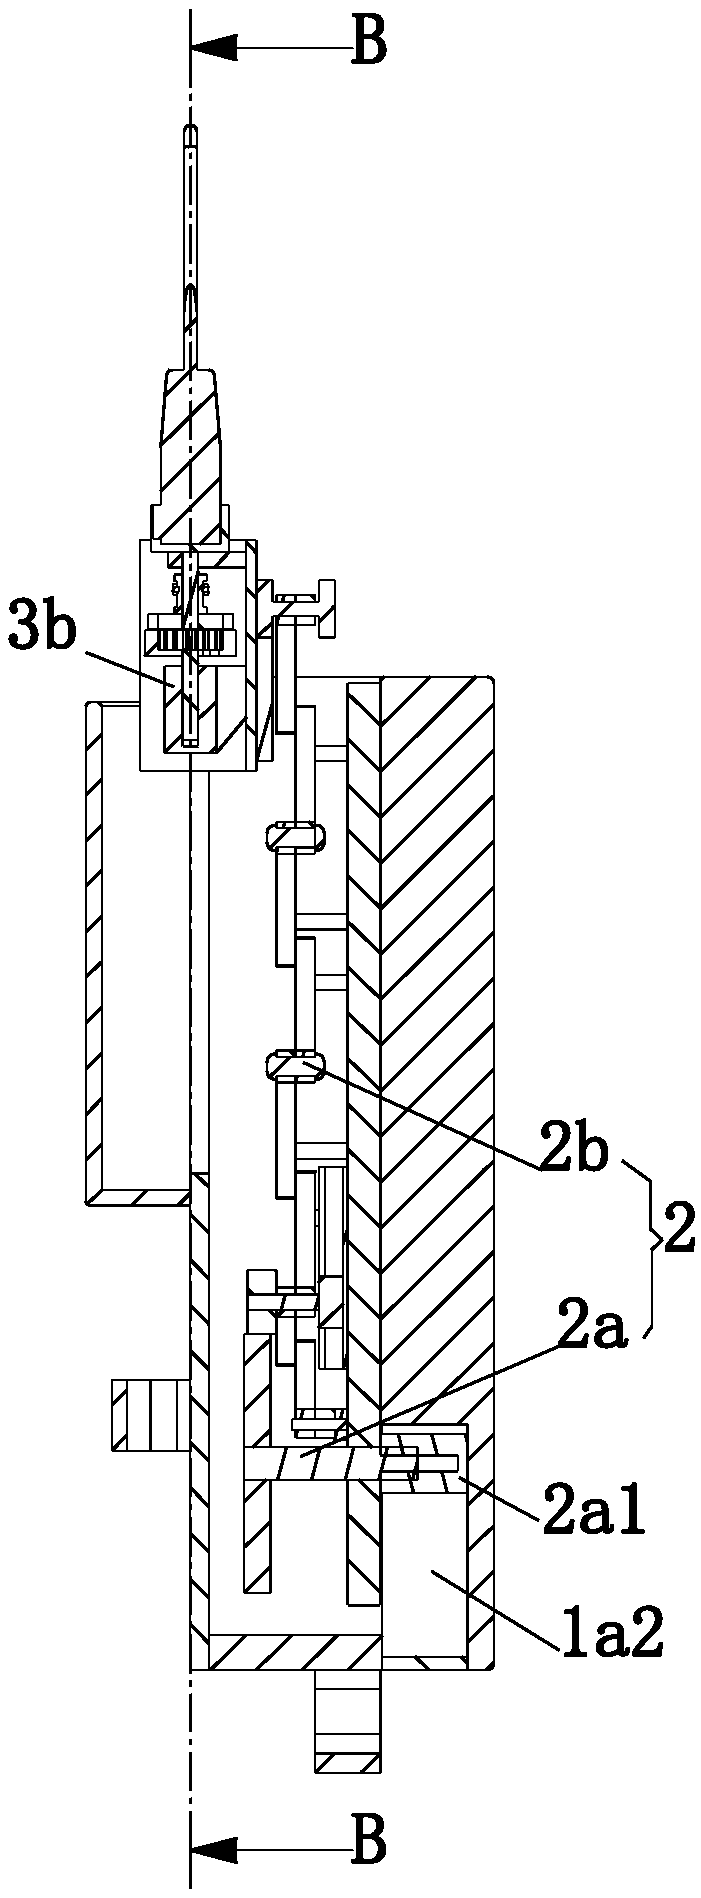 Working control method of multifunctional steel bar binding device